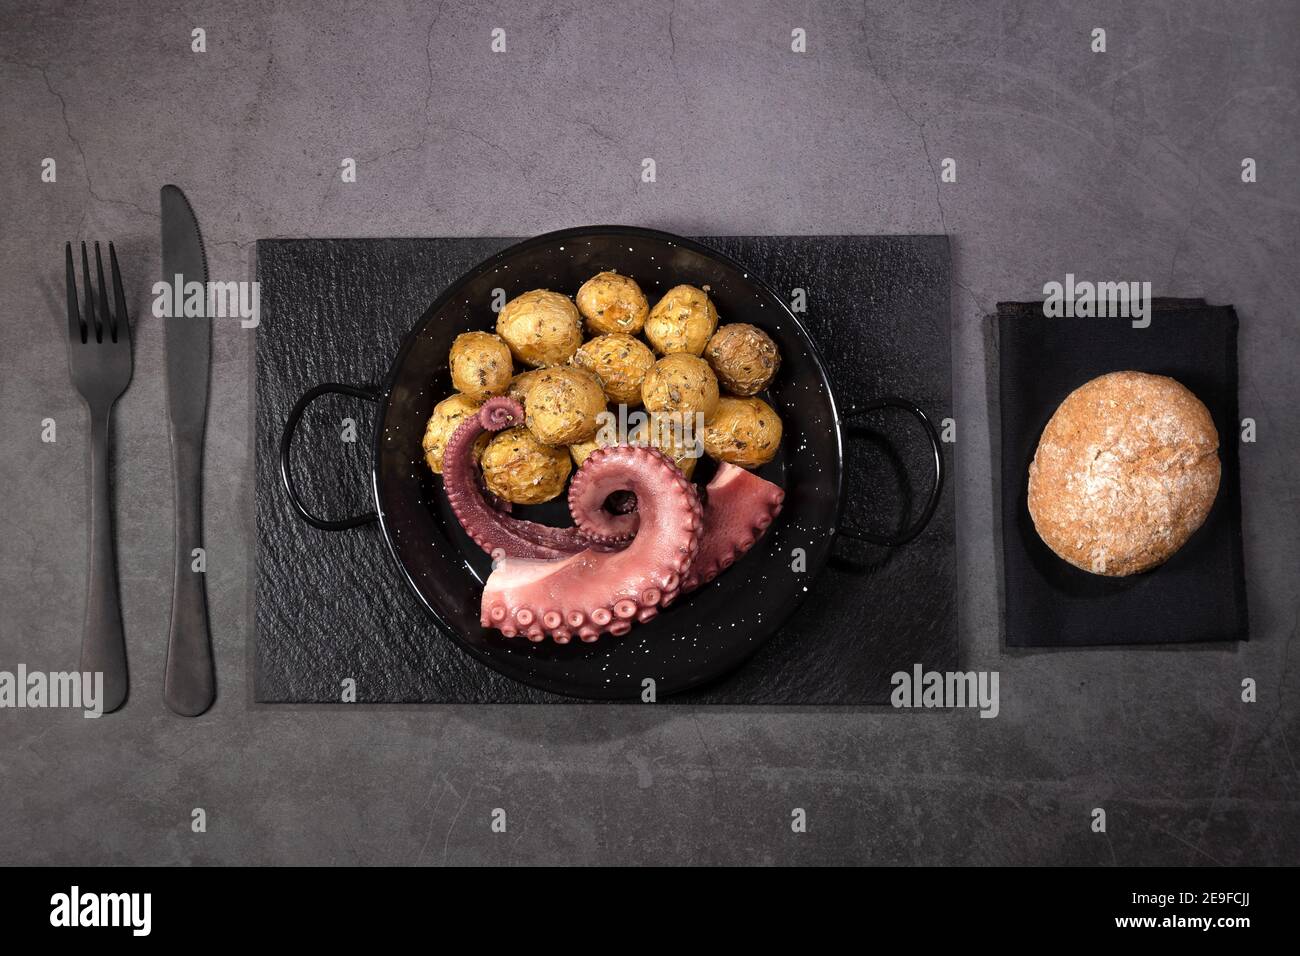 Ragoût de tentacules de poulpe avec des pommes de terre sur une plaque à poêle sur fond sombre vue de dessus. Banque D'Images